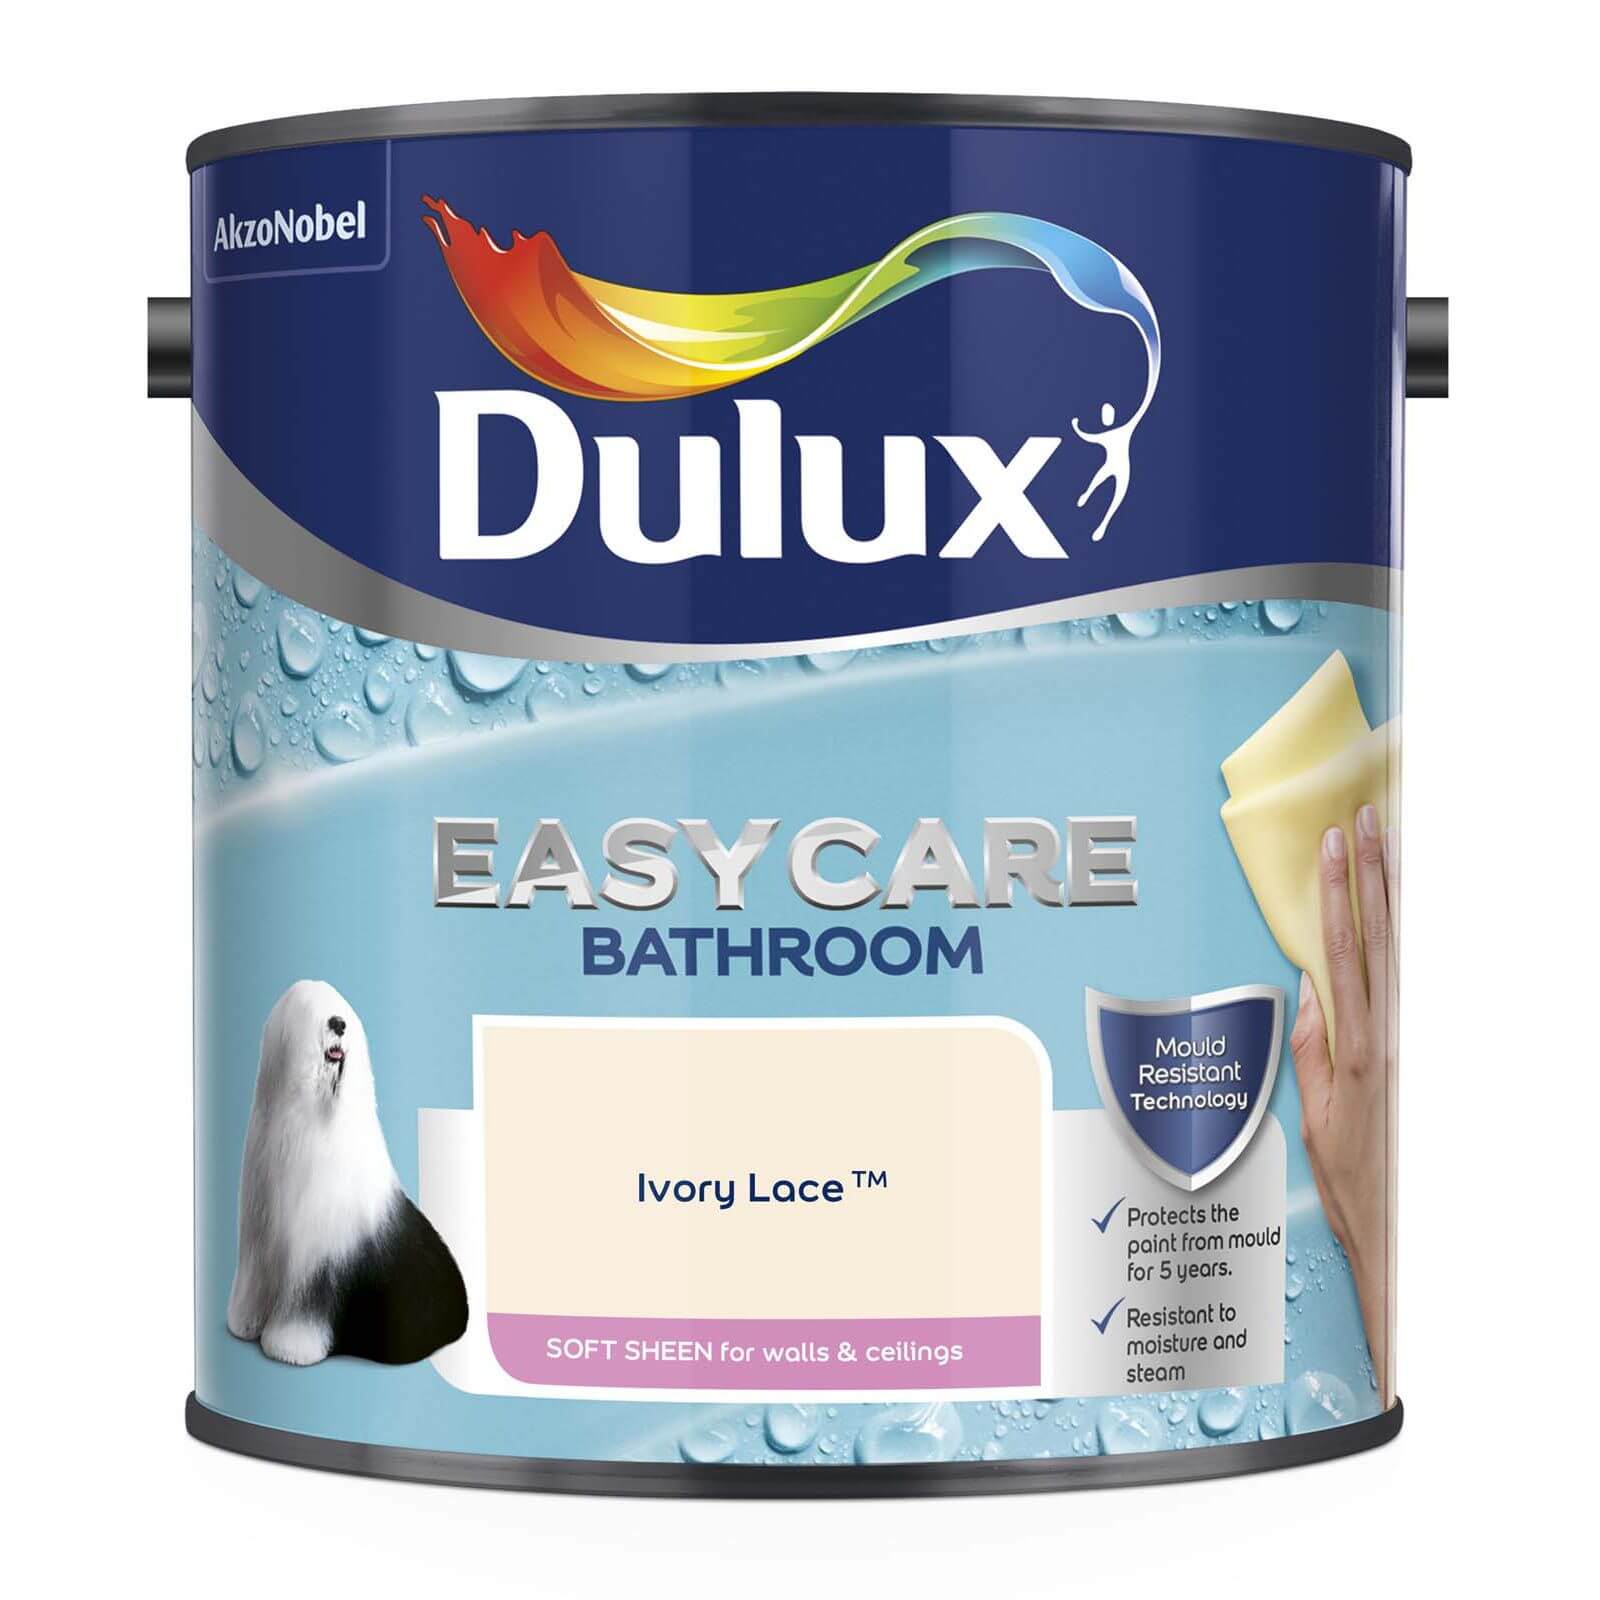 Dulux Easycare Bathroom Ivory Lace Soft Sheen Paint - 2.5L